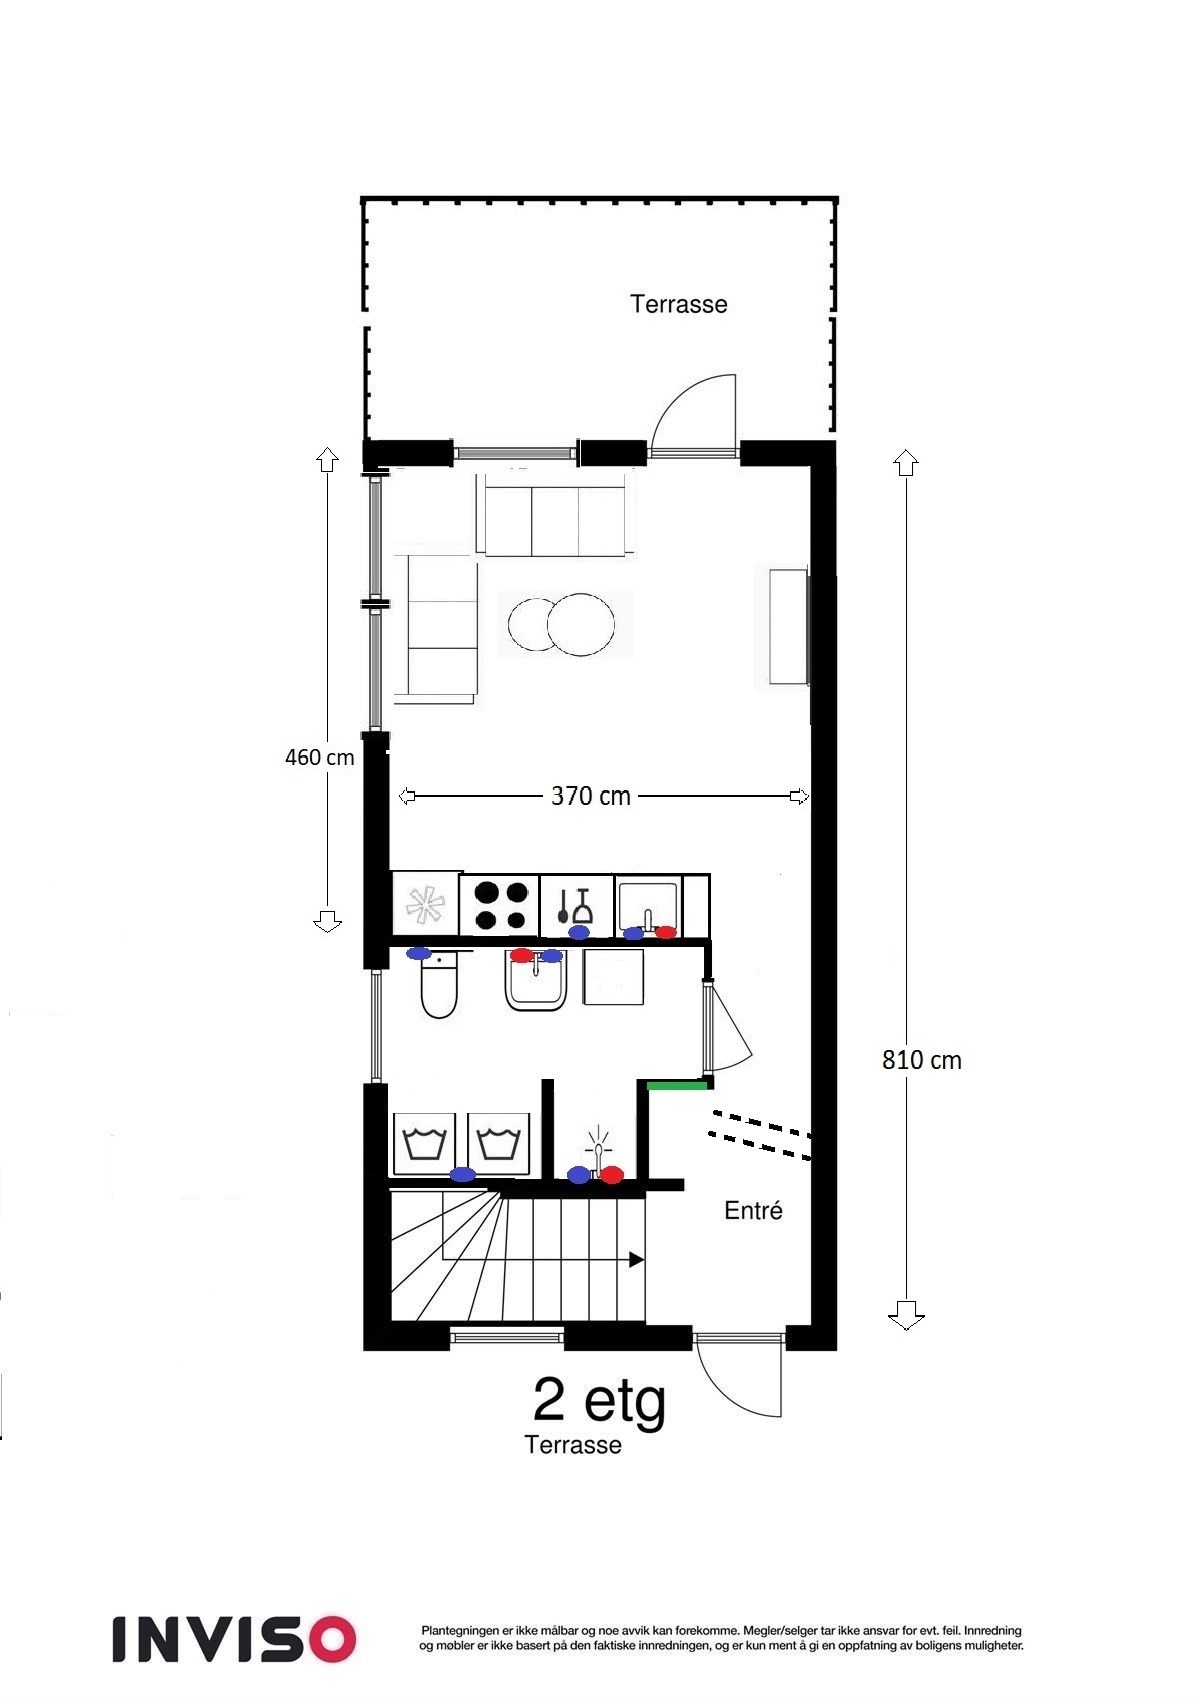 Renovering av 2-roms - leilighet ny.jpg - Opps